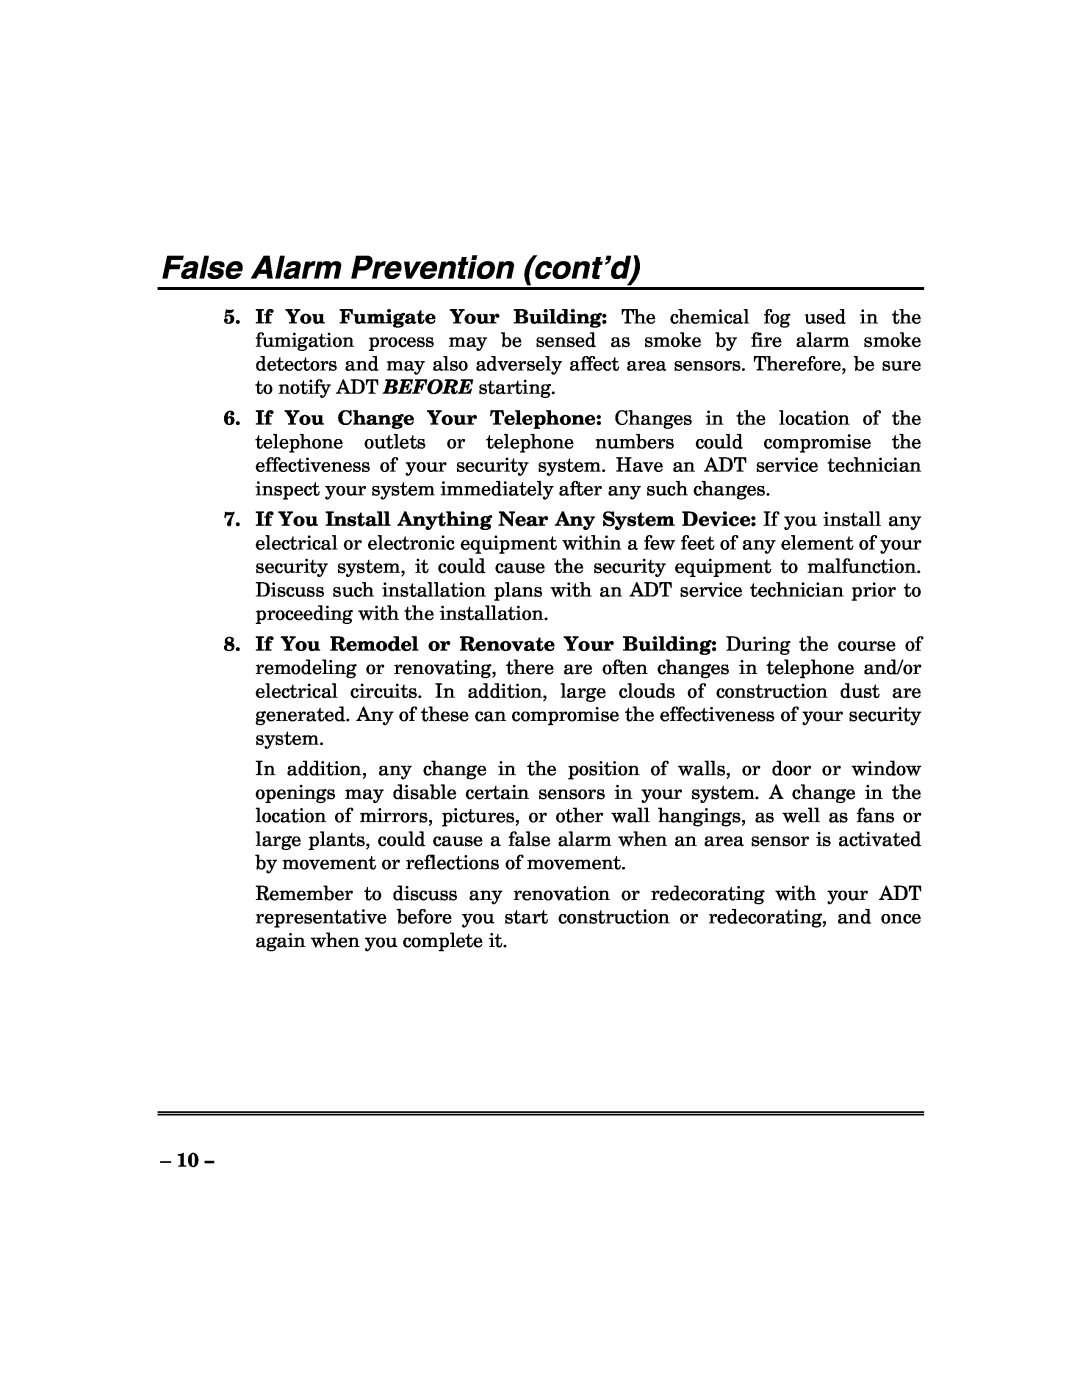 ADT Security Services 200 Plus manual False Alarm Prevention cont’d 